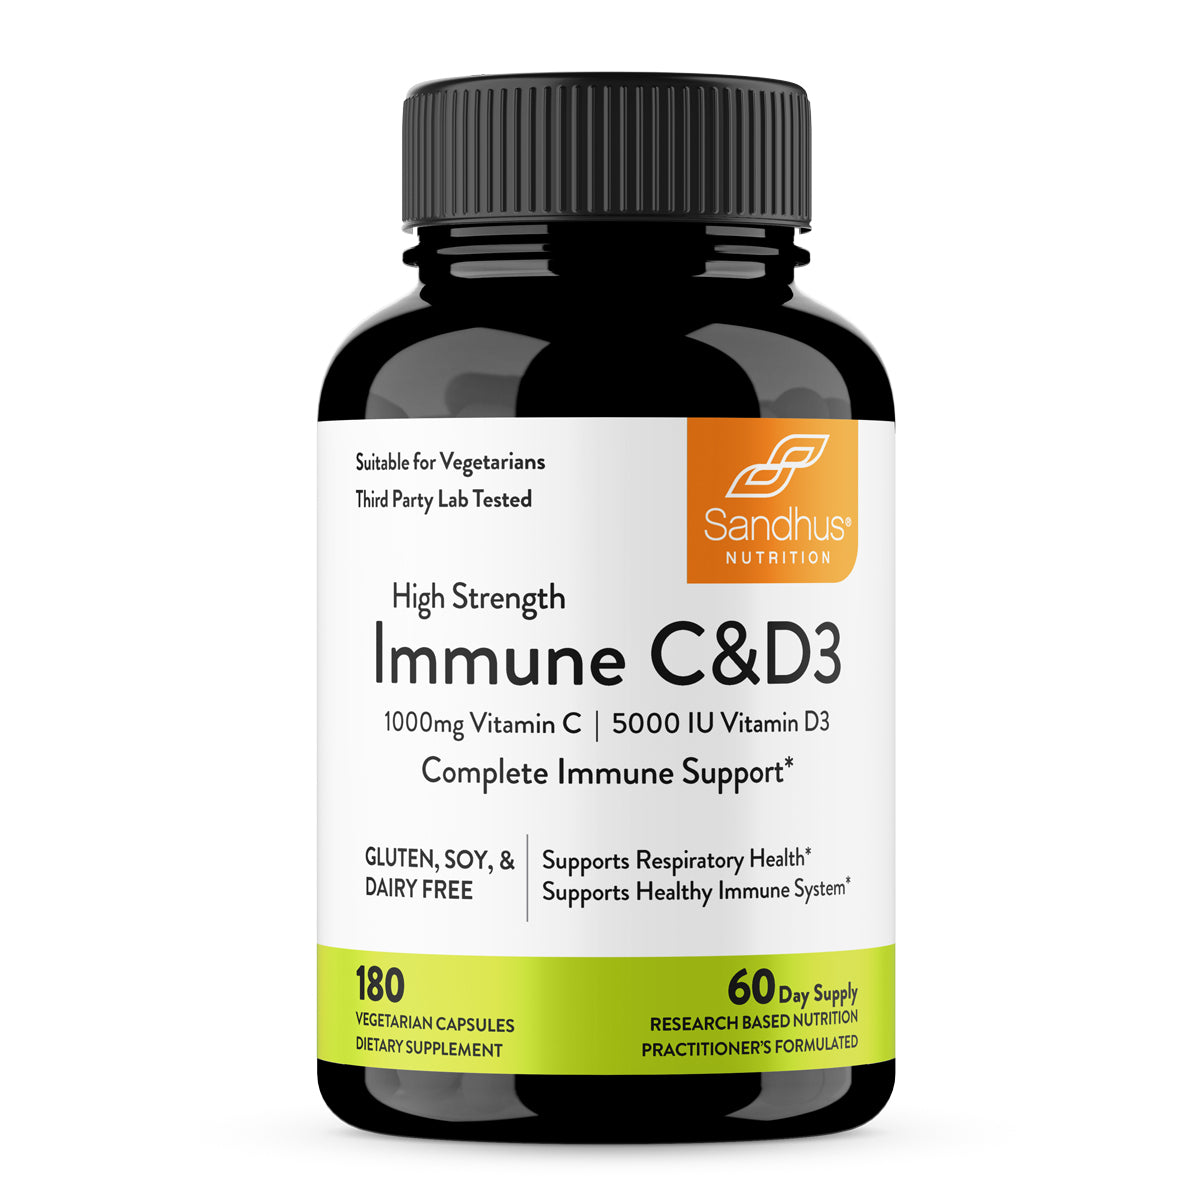 immune-c-&d3-bottle